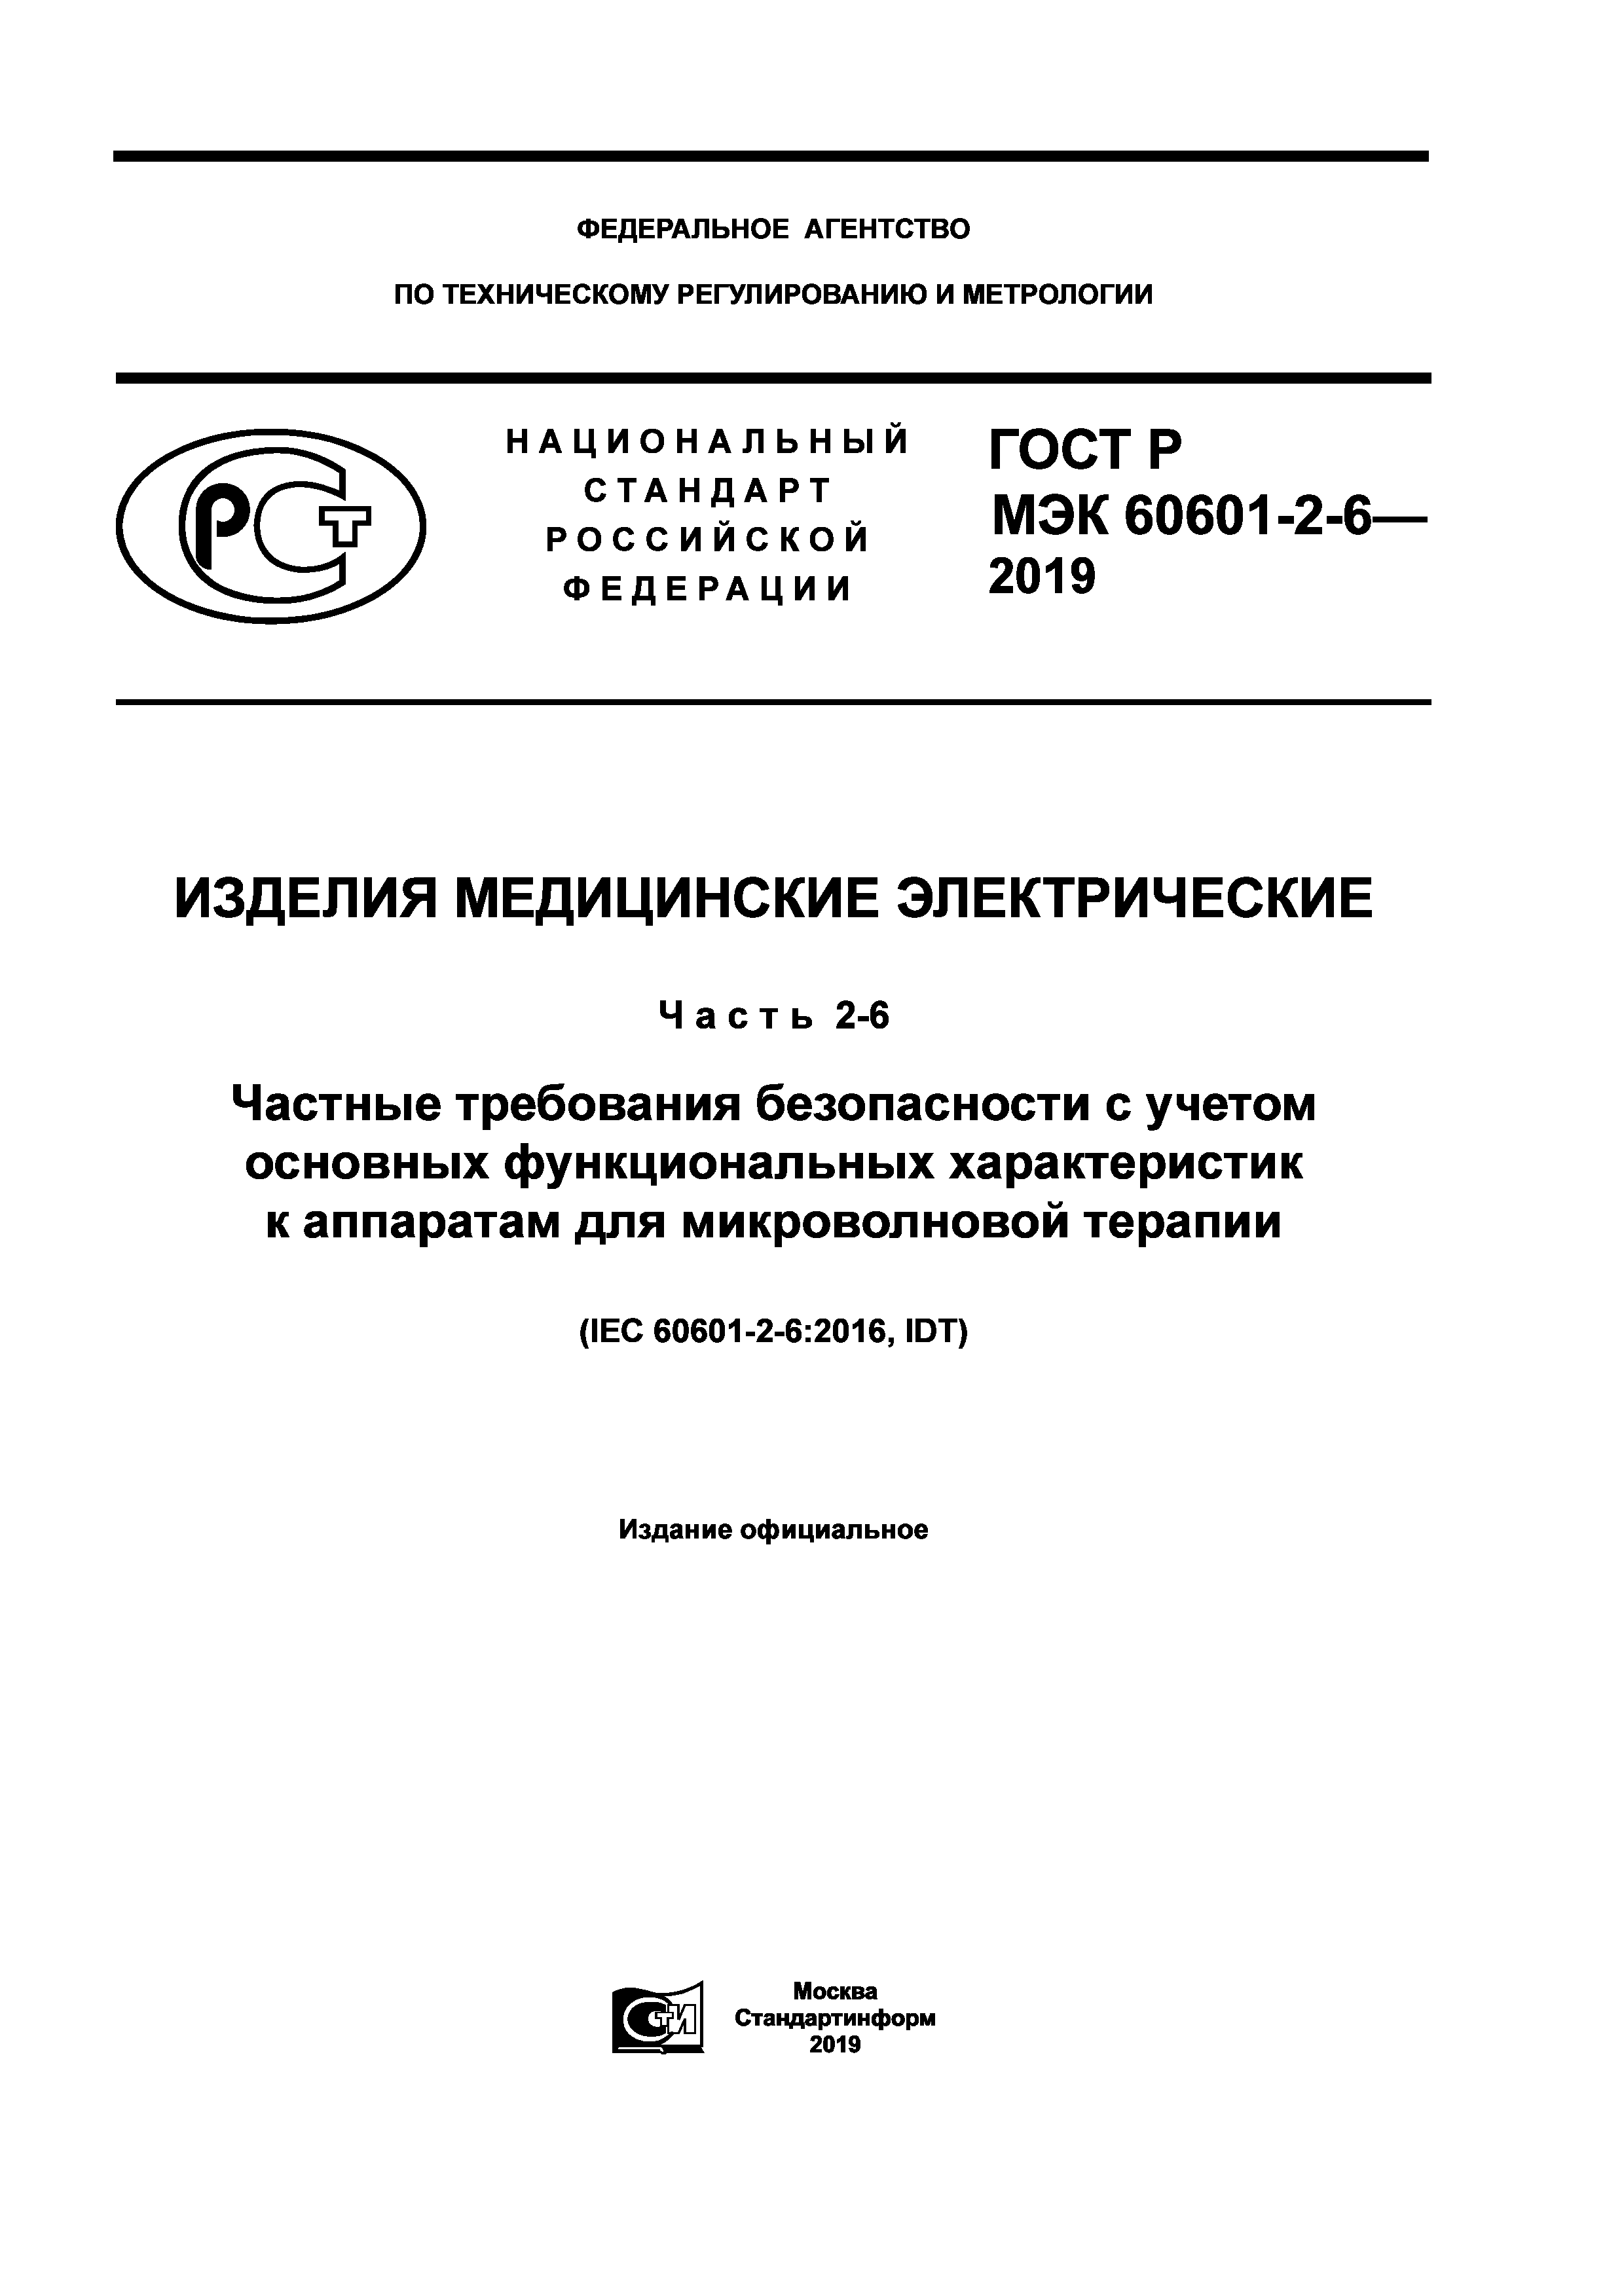 ГОСТ Р МЭК 60601-2-6-2019